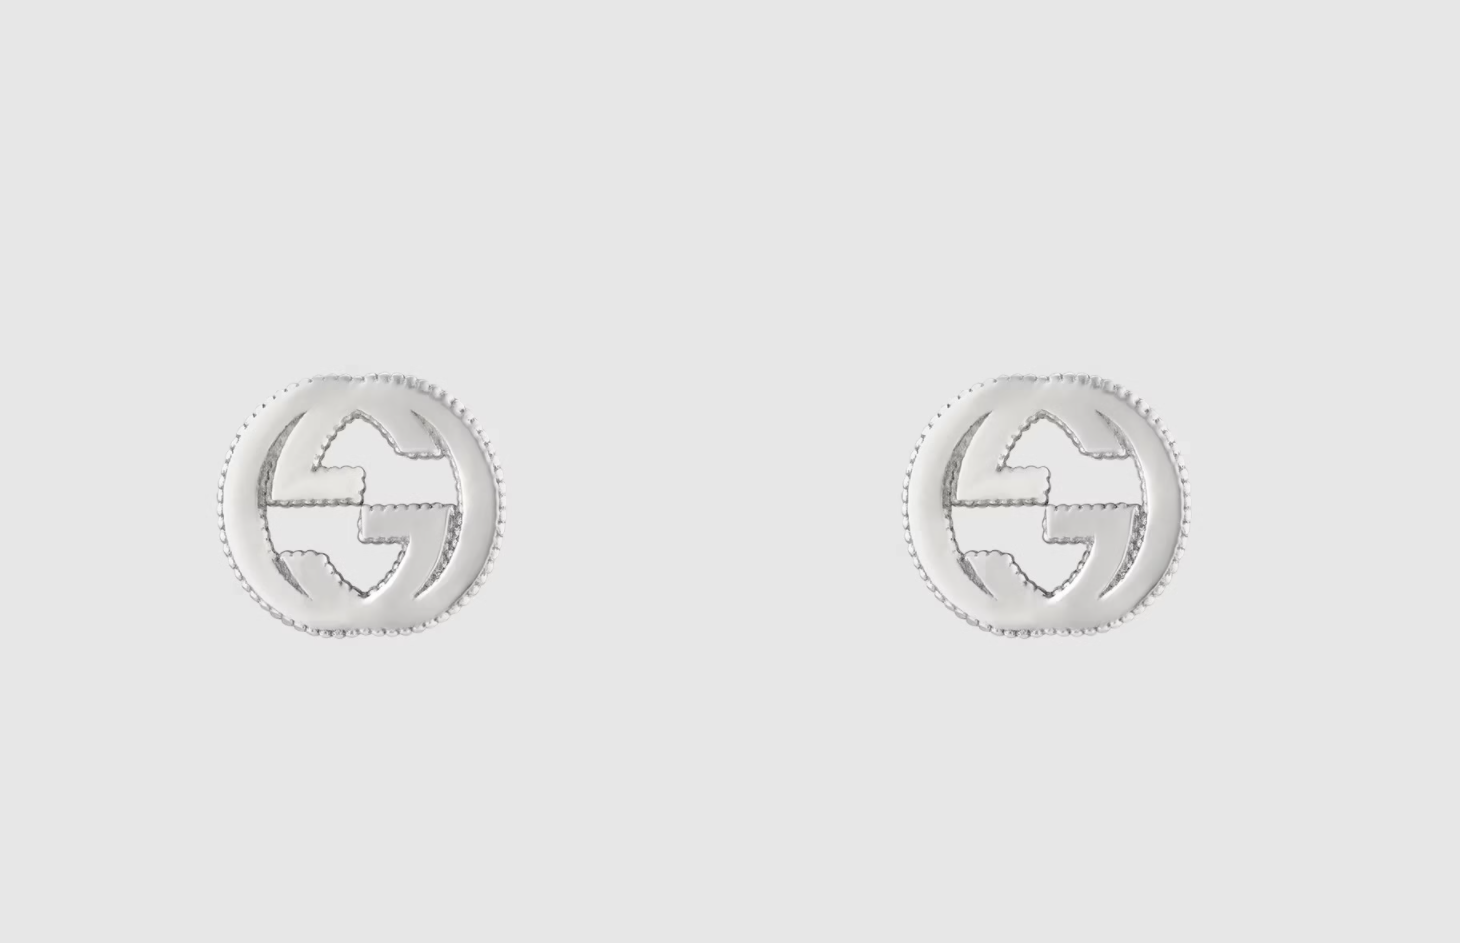 Gucci Interlocking G Earrings in Silver - $250.00